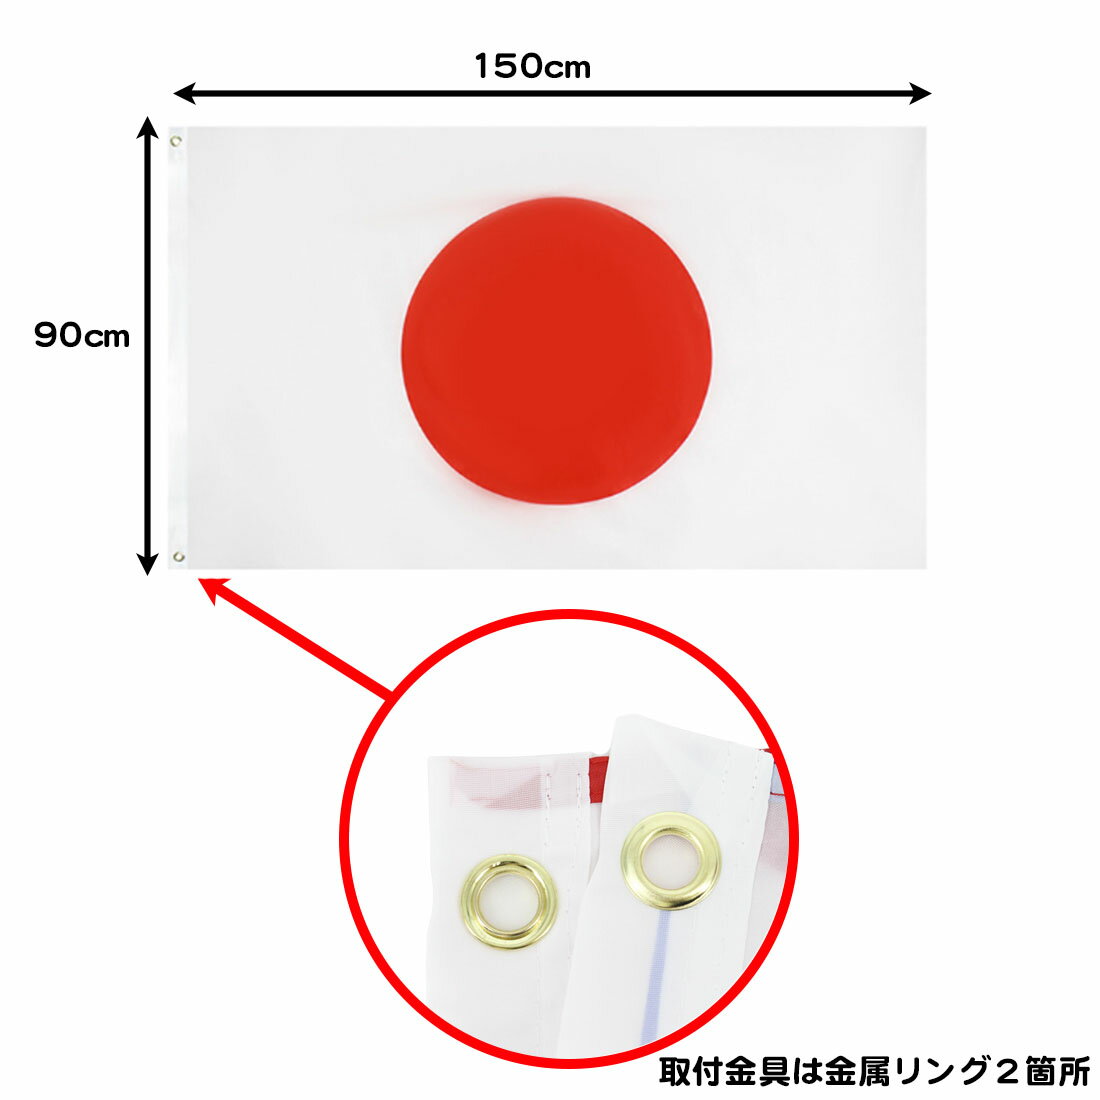 日本 国旗 リング付き 日の丸 特大サイズ 150cm×90 日本代表サッカー応援 インテリア ポール 送料無料 2